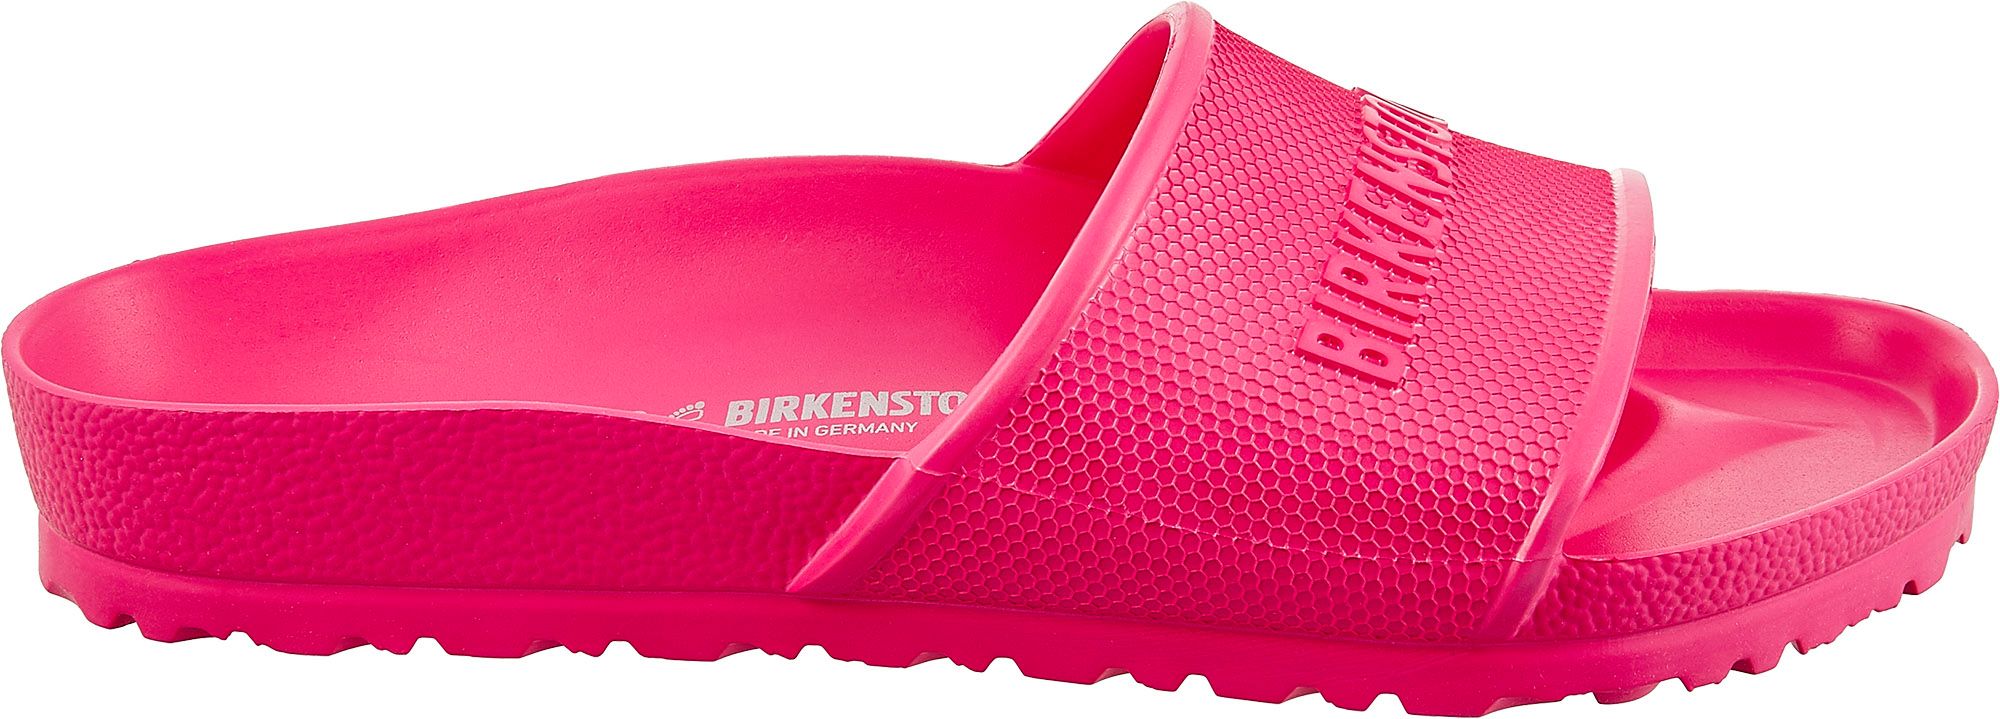 rubber birkenstock sandals womens